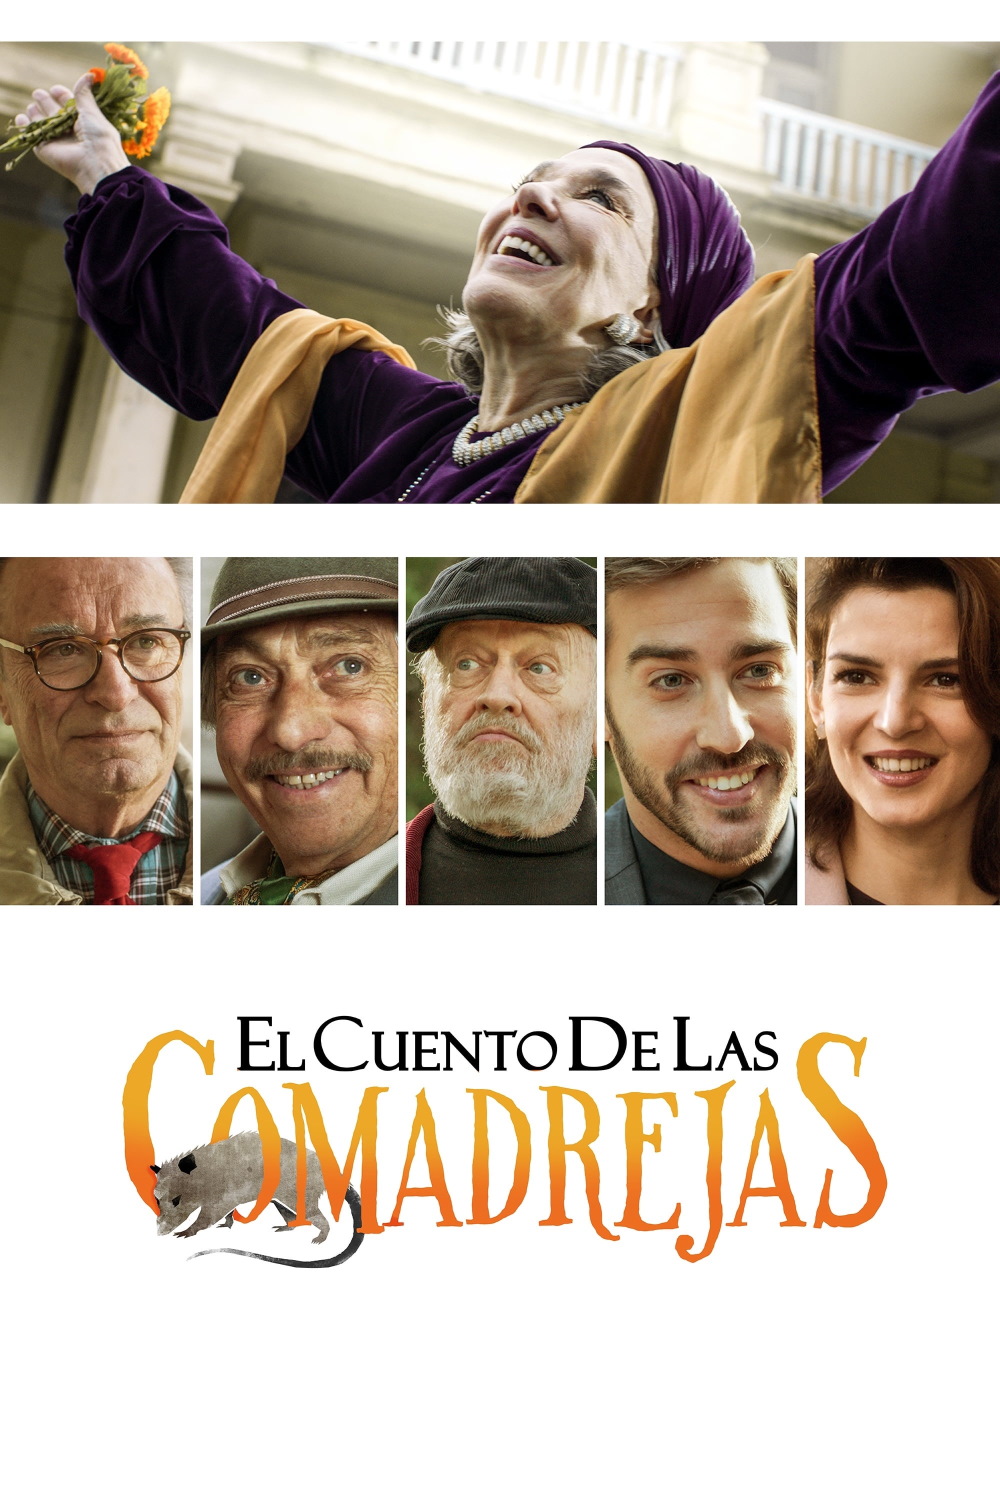 Королі інтриги / El cuento de las comadrejas (2019) BDRip Ukr/Spa